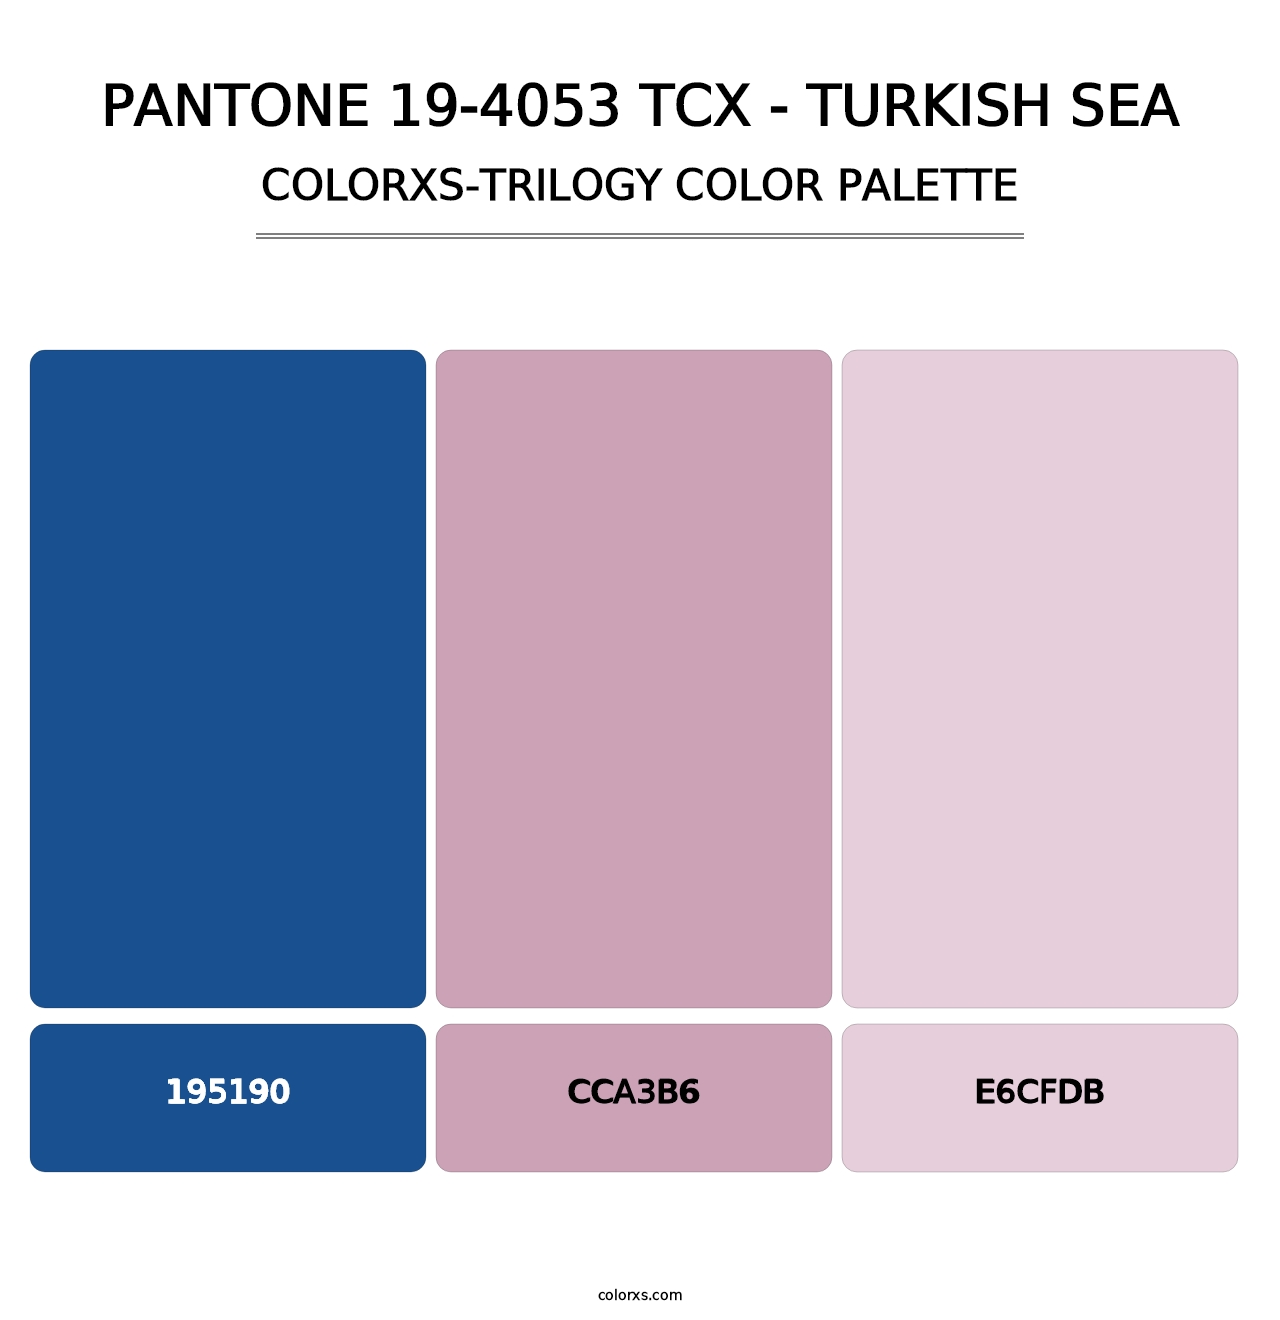 PANTONE 19-4053 TCX - Turkish Sea - Colorxs Trilogy Palette